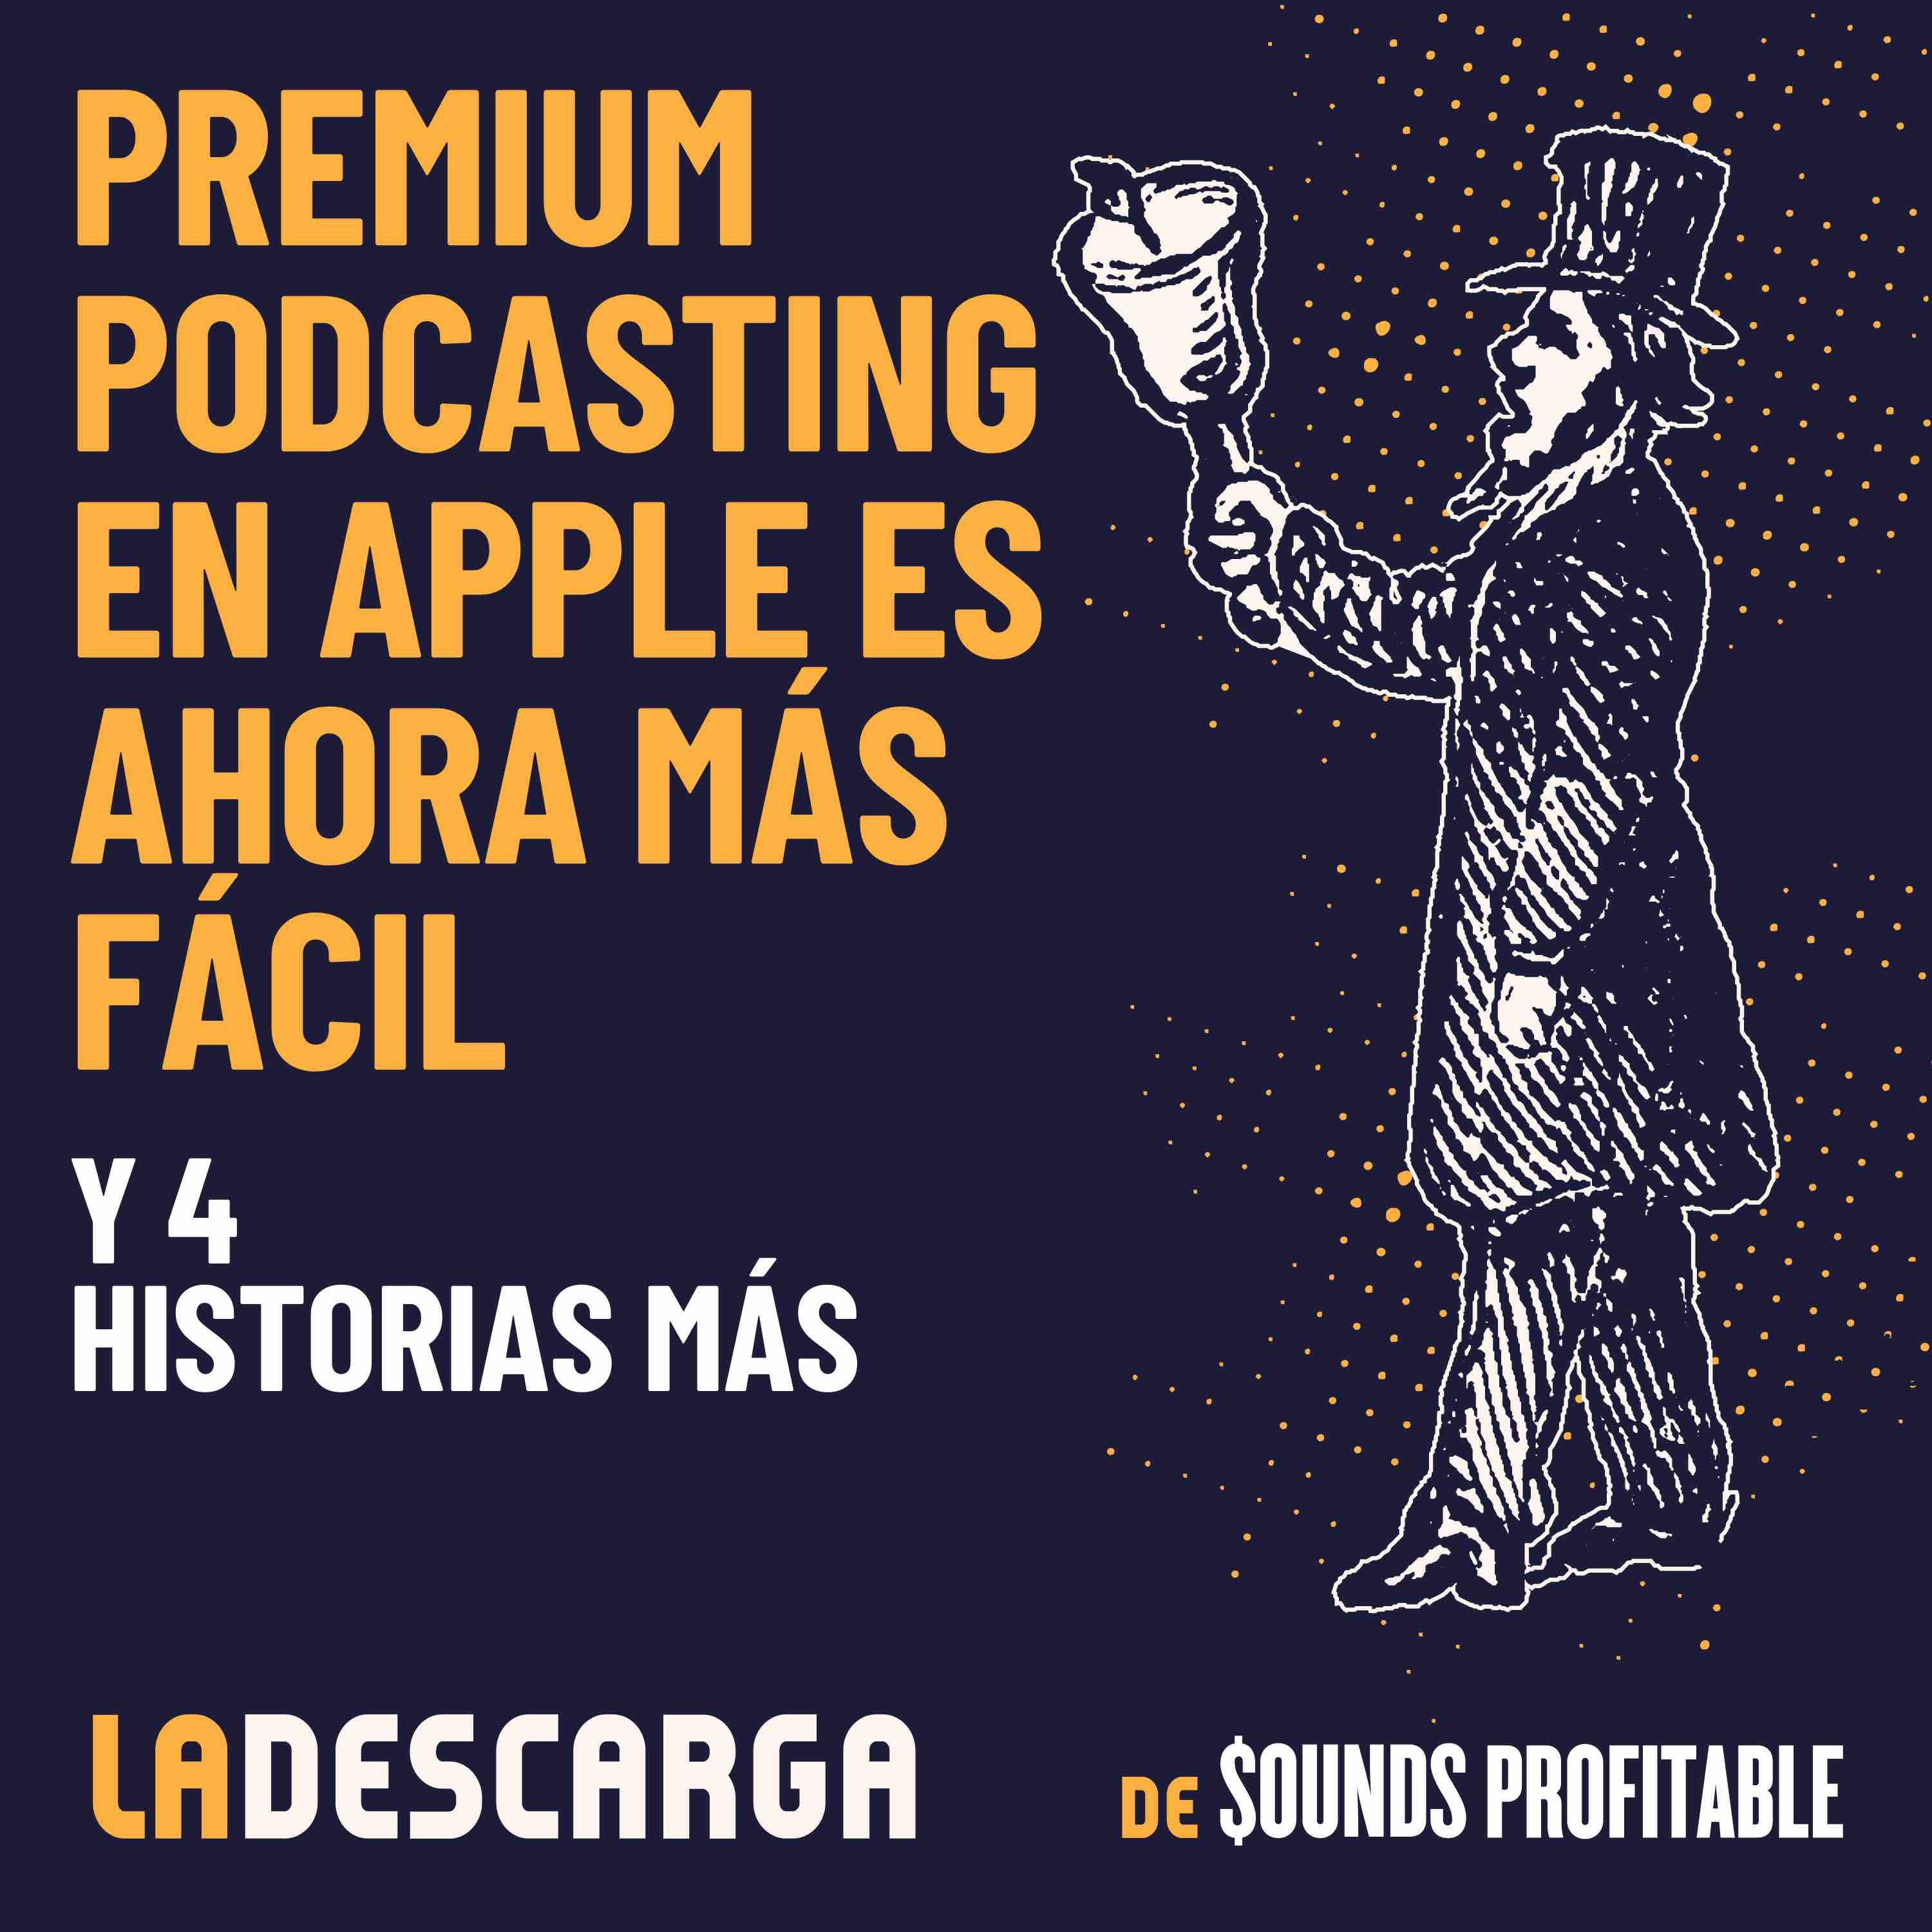 Premium podcasting en Apple es ahora más fácil y 4 historias más, 20 de mayo 2022